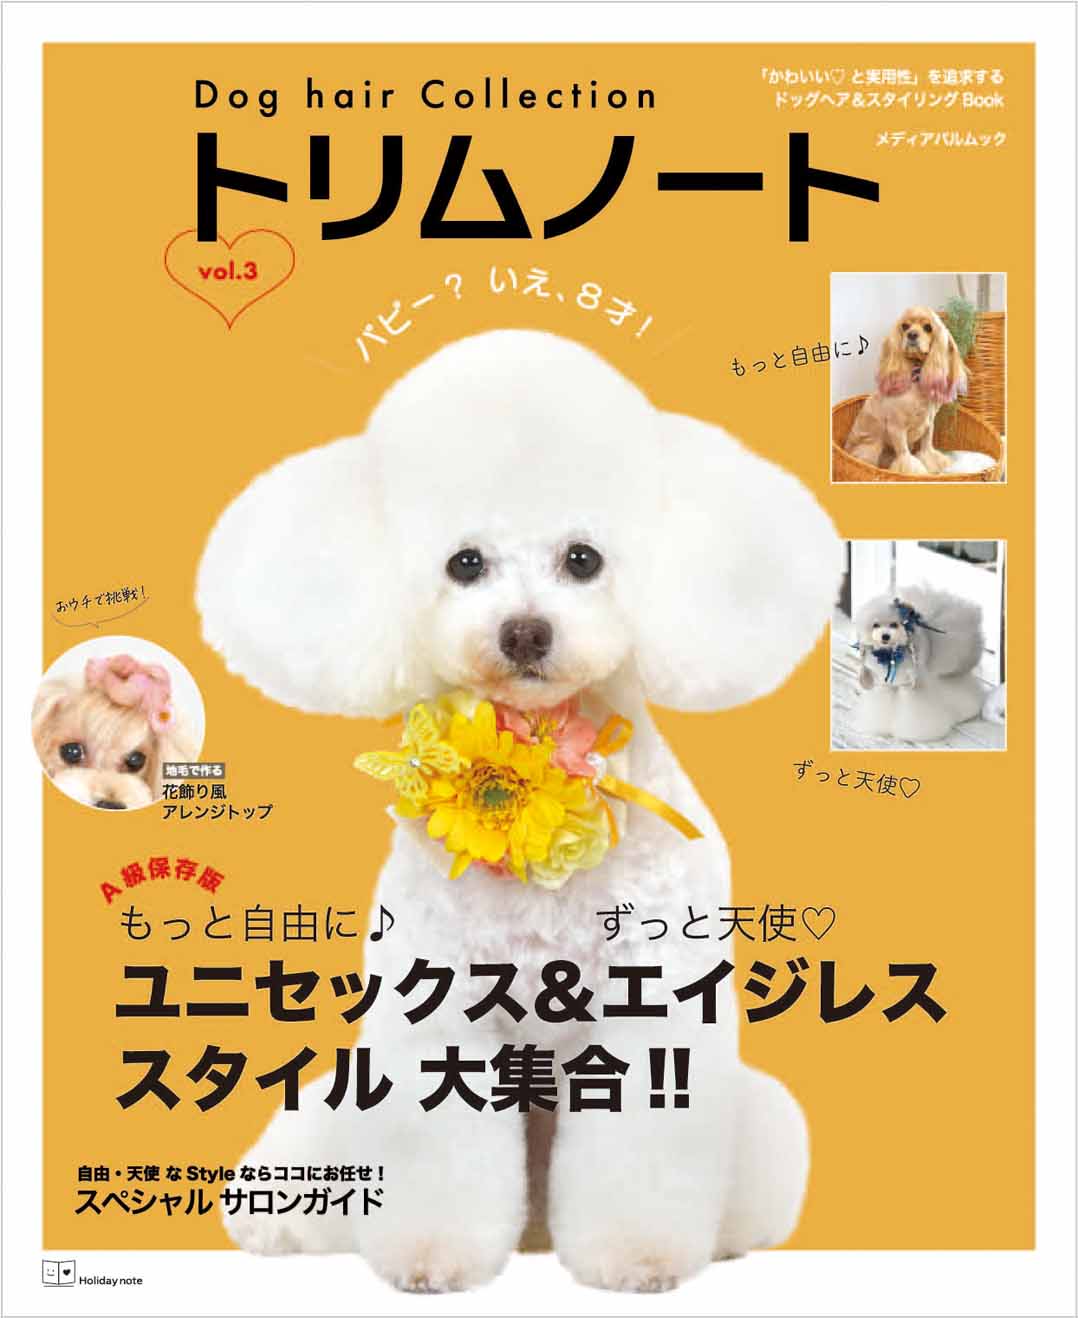 Dog hair Collection トリムノート vol.3の商品画像